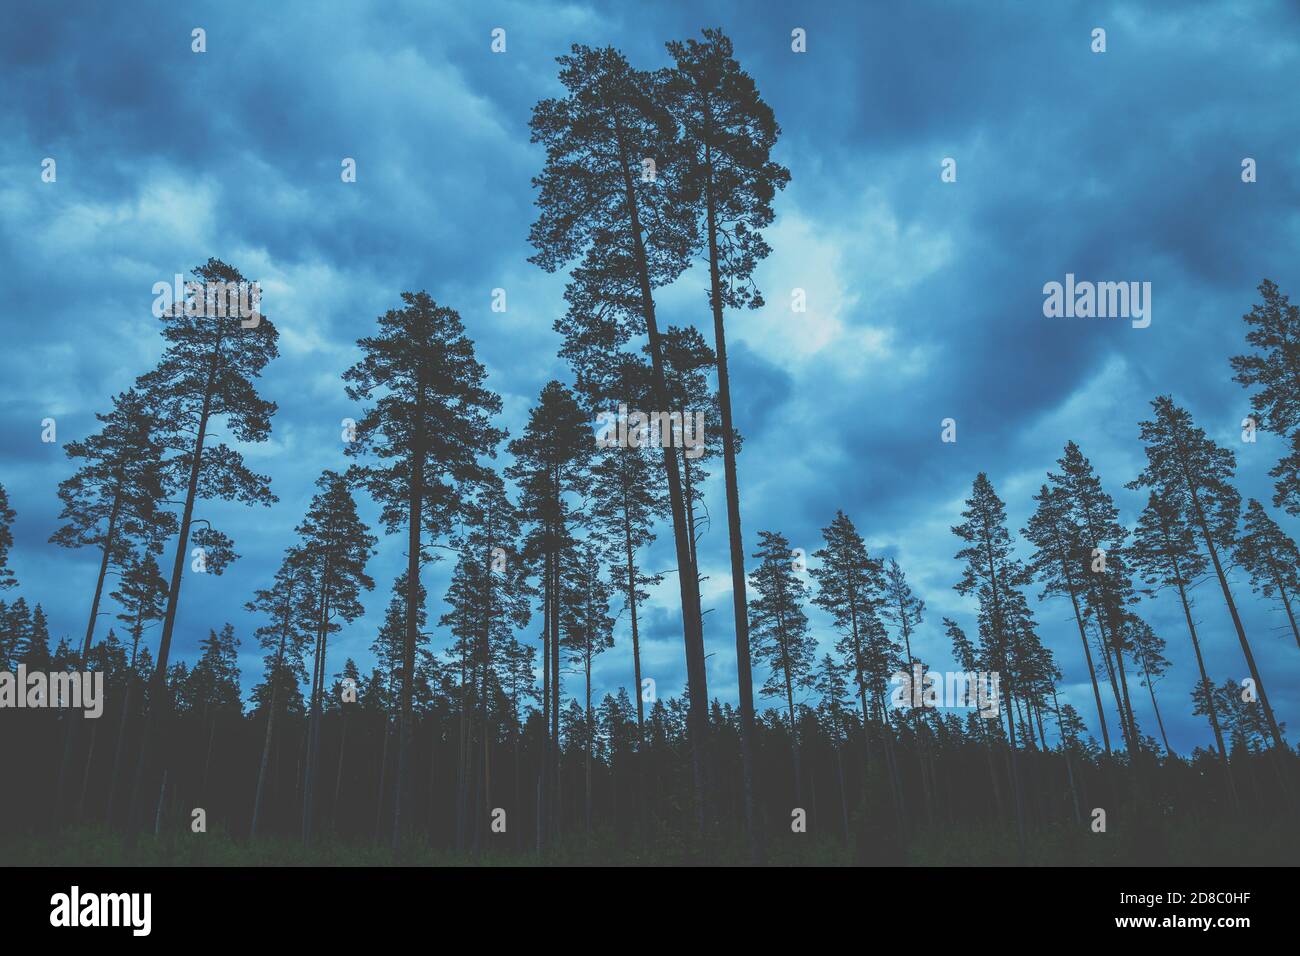 Suggestivo paesaggio forestale. Silhouette di pini alti contro il cielo nuvoloso scuro Foto Stock